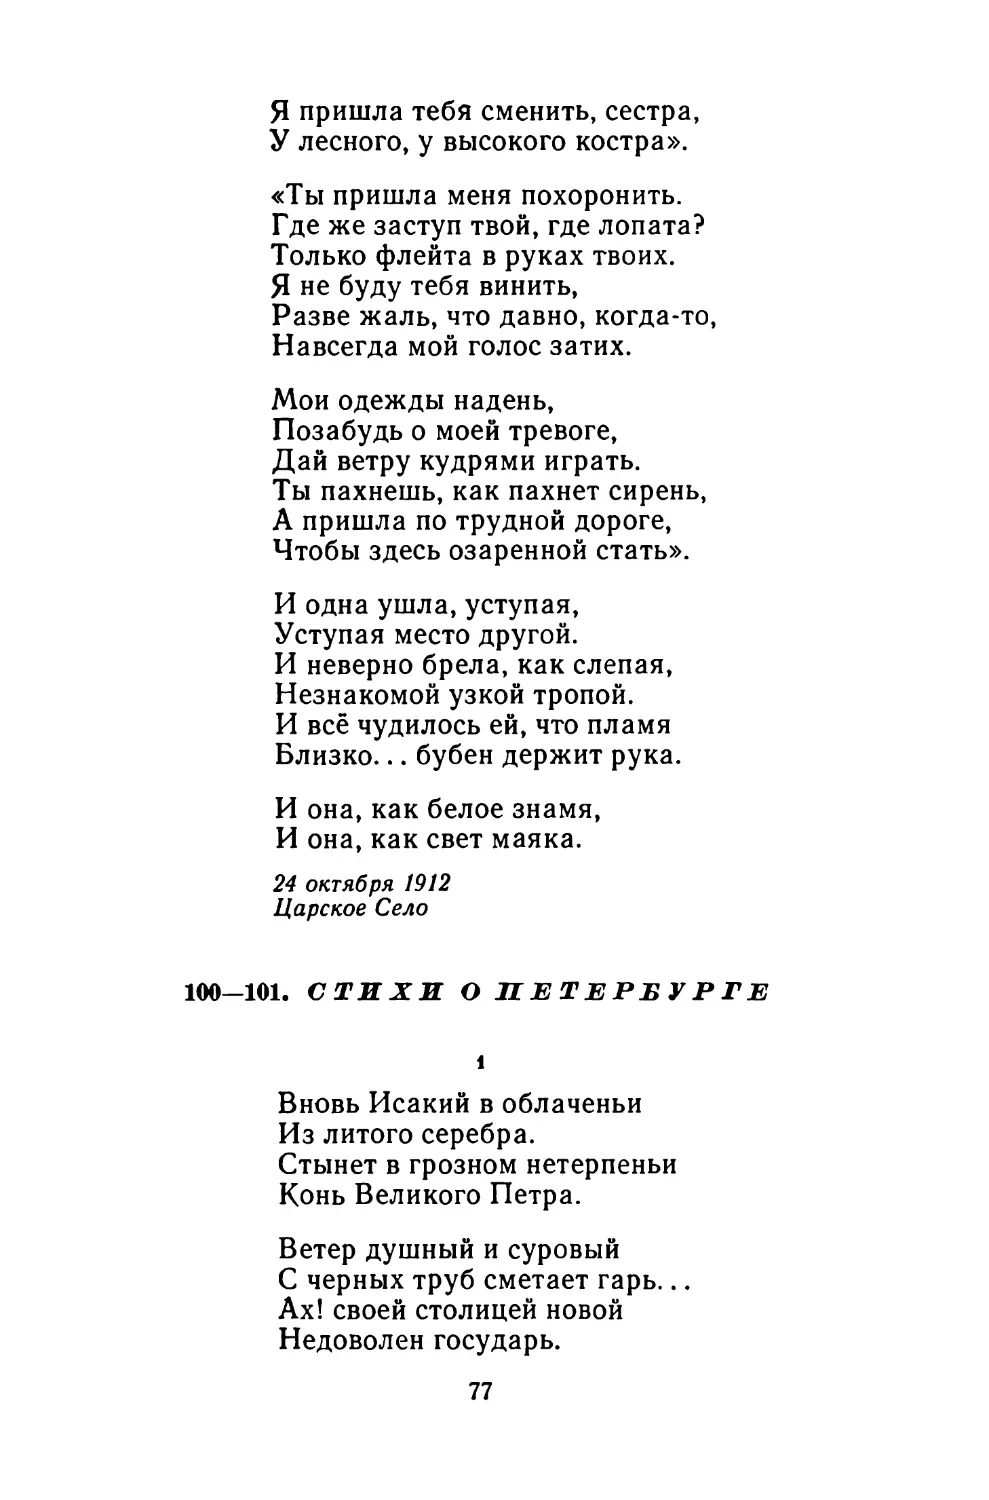 100-101. Стихи о Петербурге